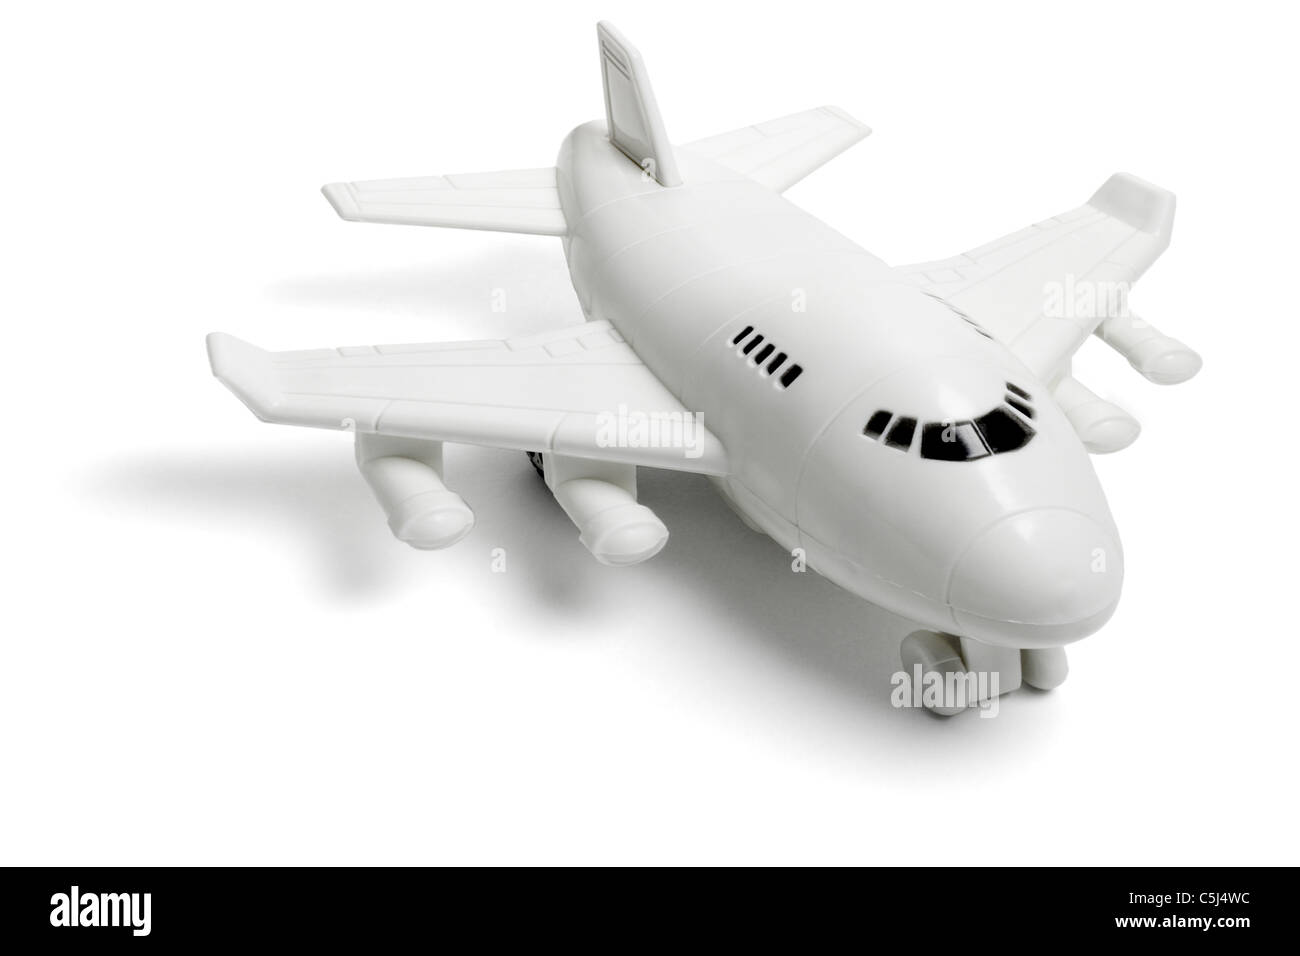 Jouet en plastique passenger jet avion sur fond blanc Banque D'Images